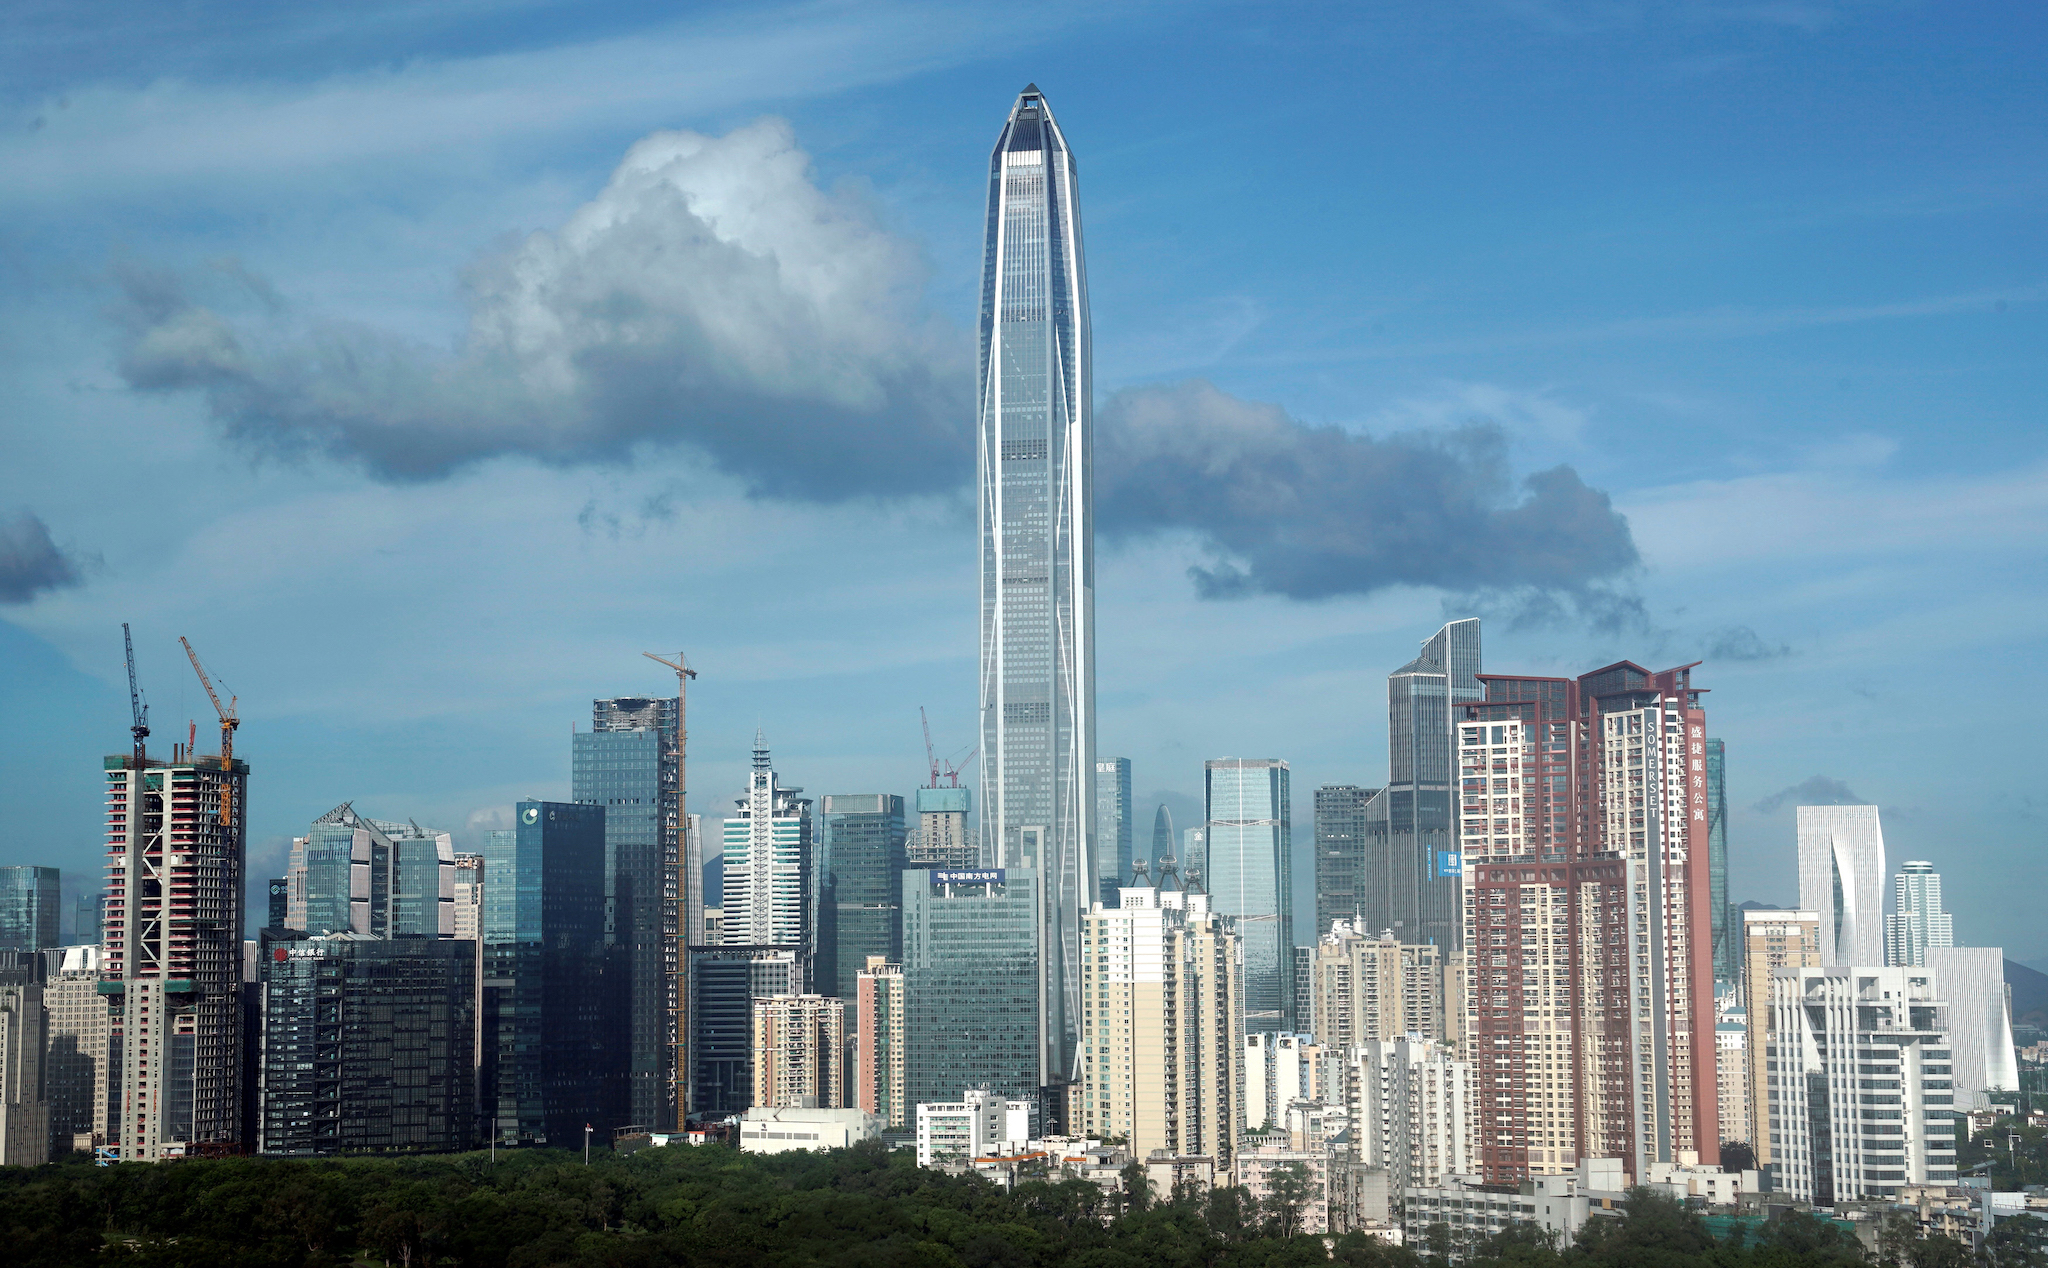 Nhằm ngăn chặn các dự án phù phiếm, Trung Quốc hạn chế xây nhà chọc trời ở các thành phố nhỏ